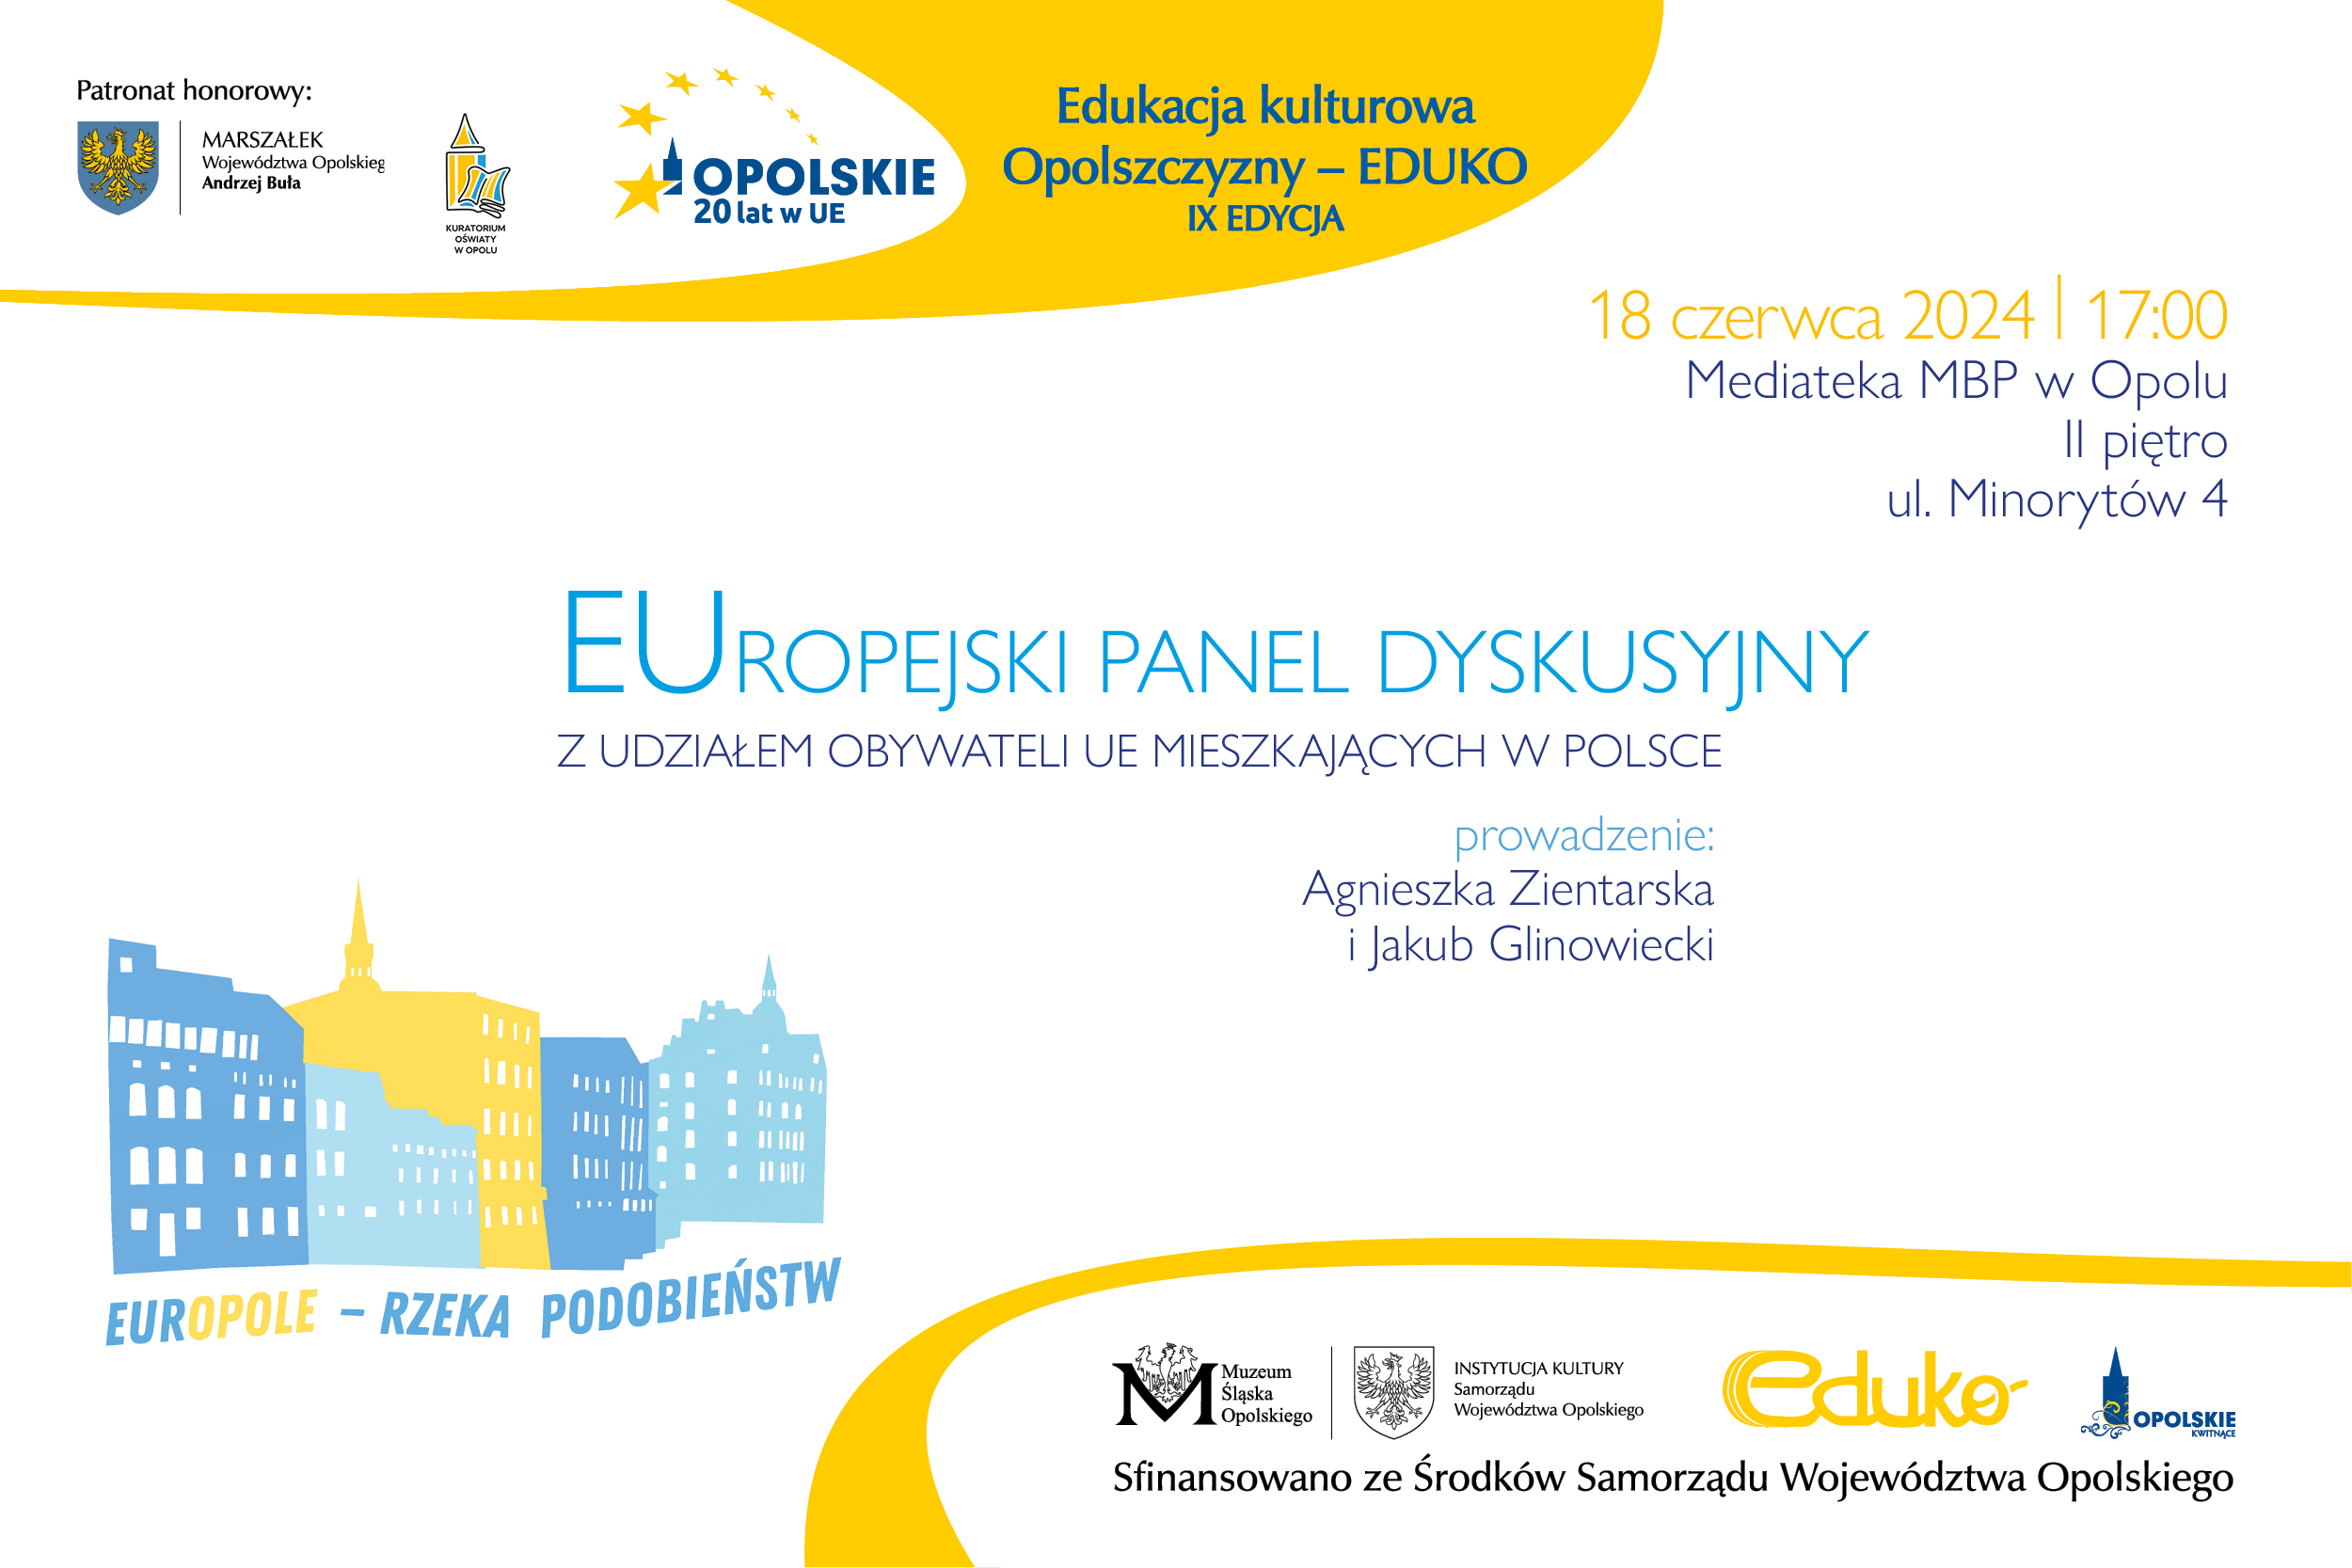 EurOpole – rzeka podobieństw / EUROPEJSKI PANEL DYSKUSYJNY z udziałem obywateli UE mieszkających w Polsce